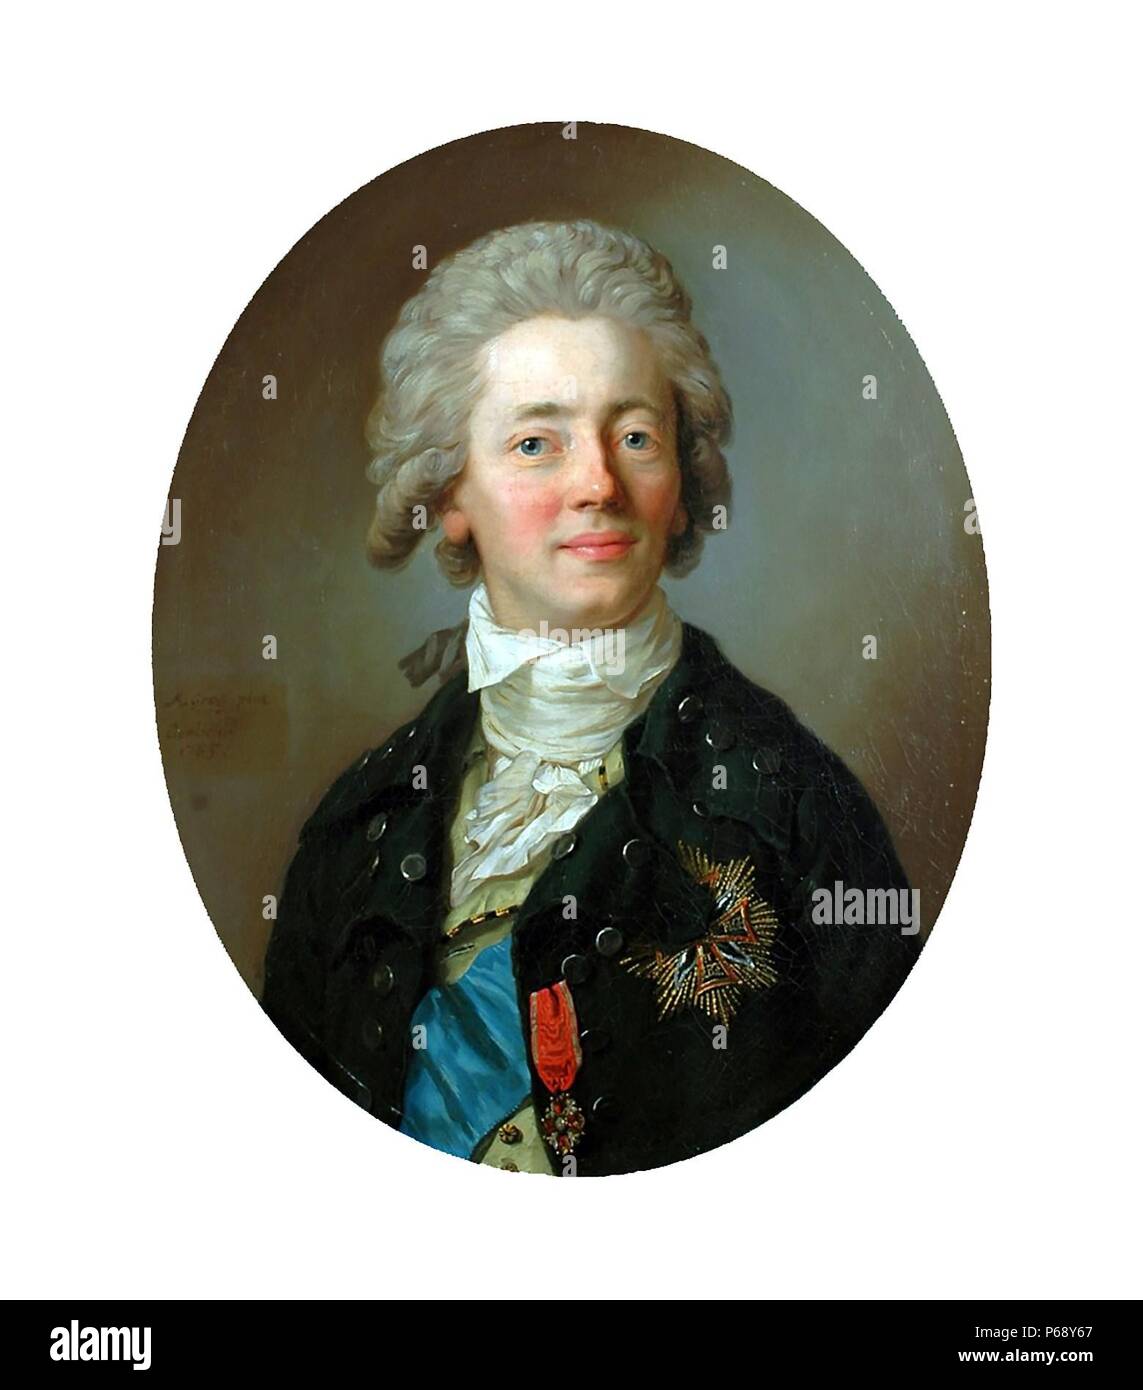 Portrait du Comte Stanislas Kostka Potocki (1755-1821), noble polonais, homme politique, écrivain, publiciste, mécène et collectionneur d'art du 1800 Banque D'Images